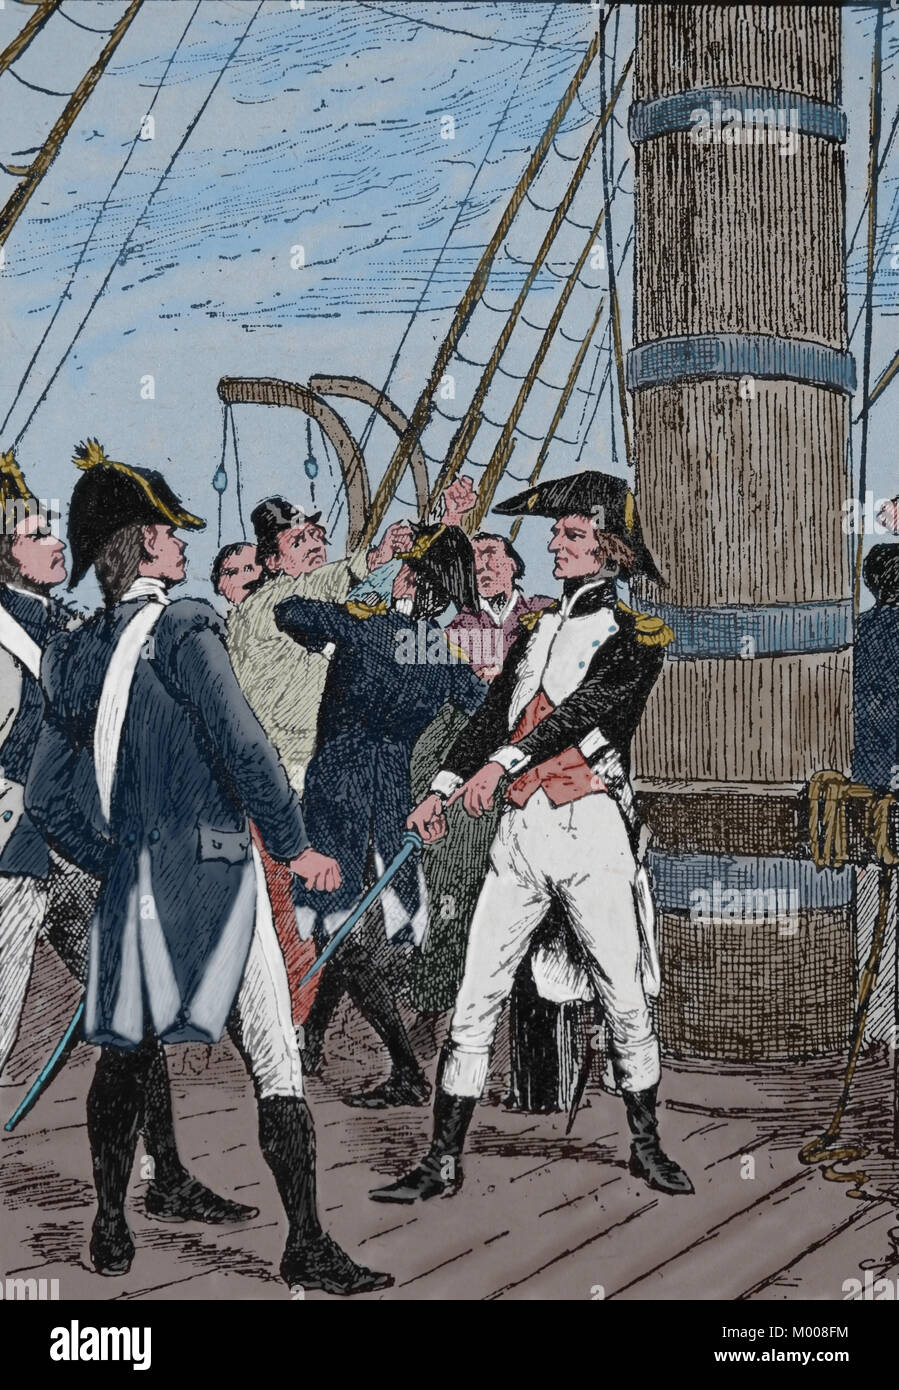 Bataille de Trafalgar, 1805. Guerres napoléoniennes. Le Français Pierre-Charles Villeneuve (1763-1806) se rend prisonnier. Banque D'Images